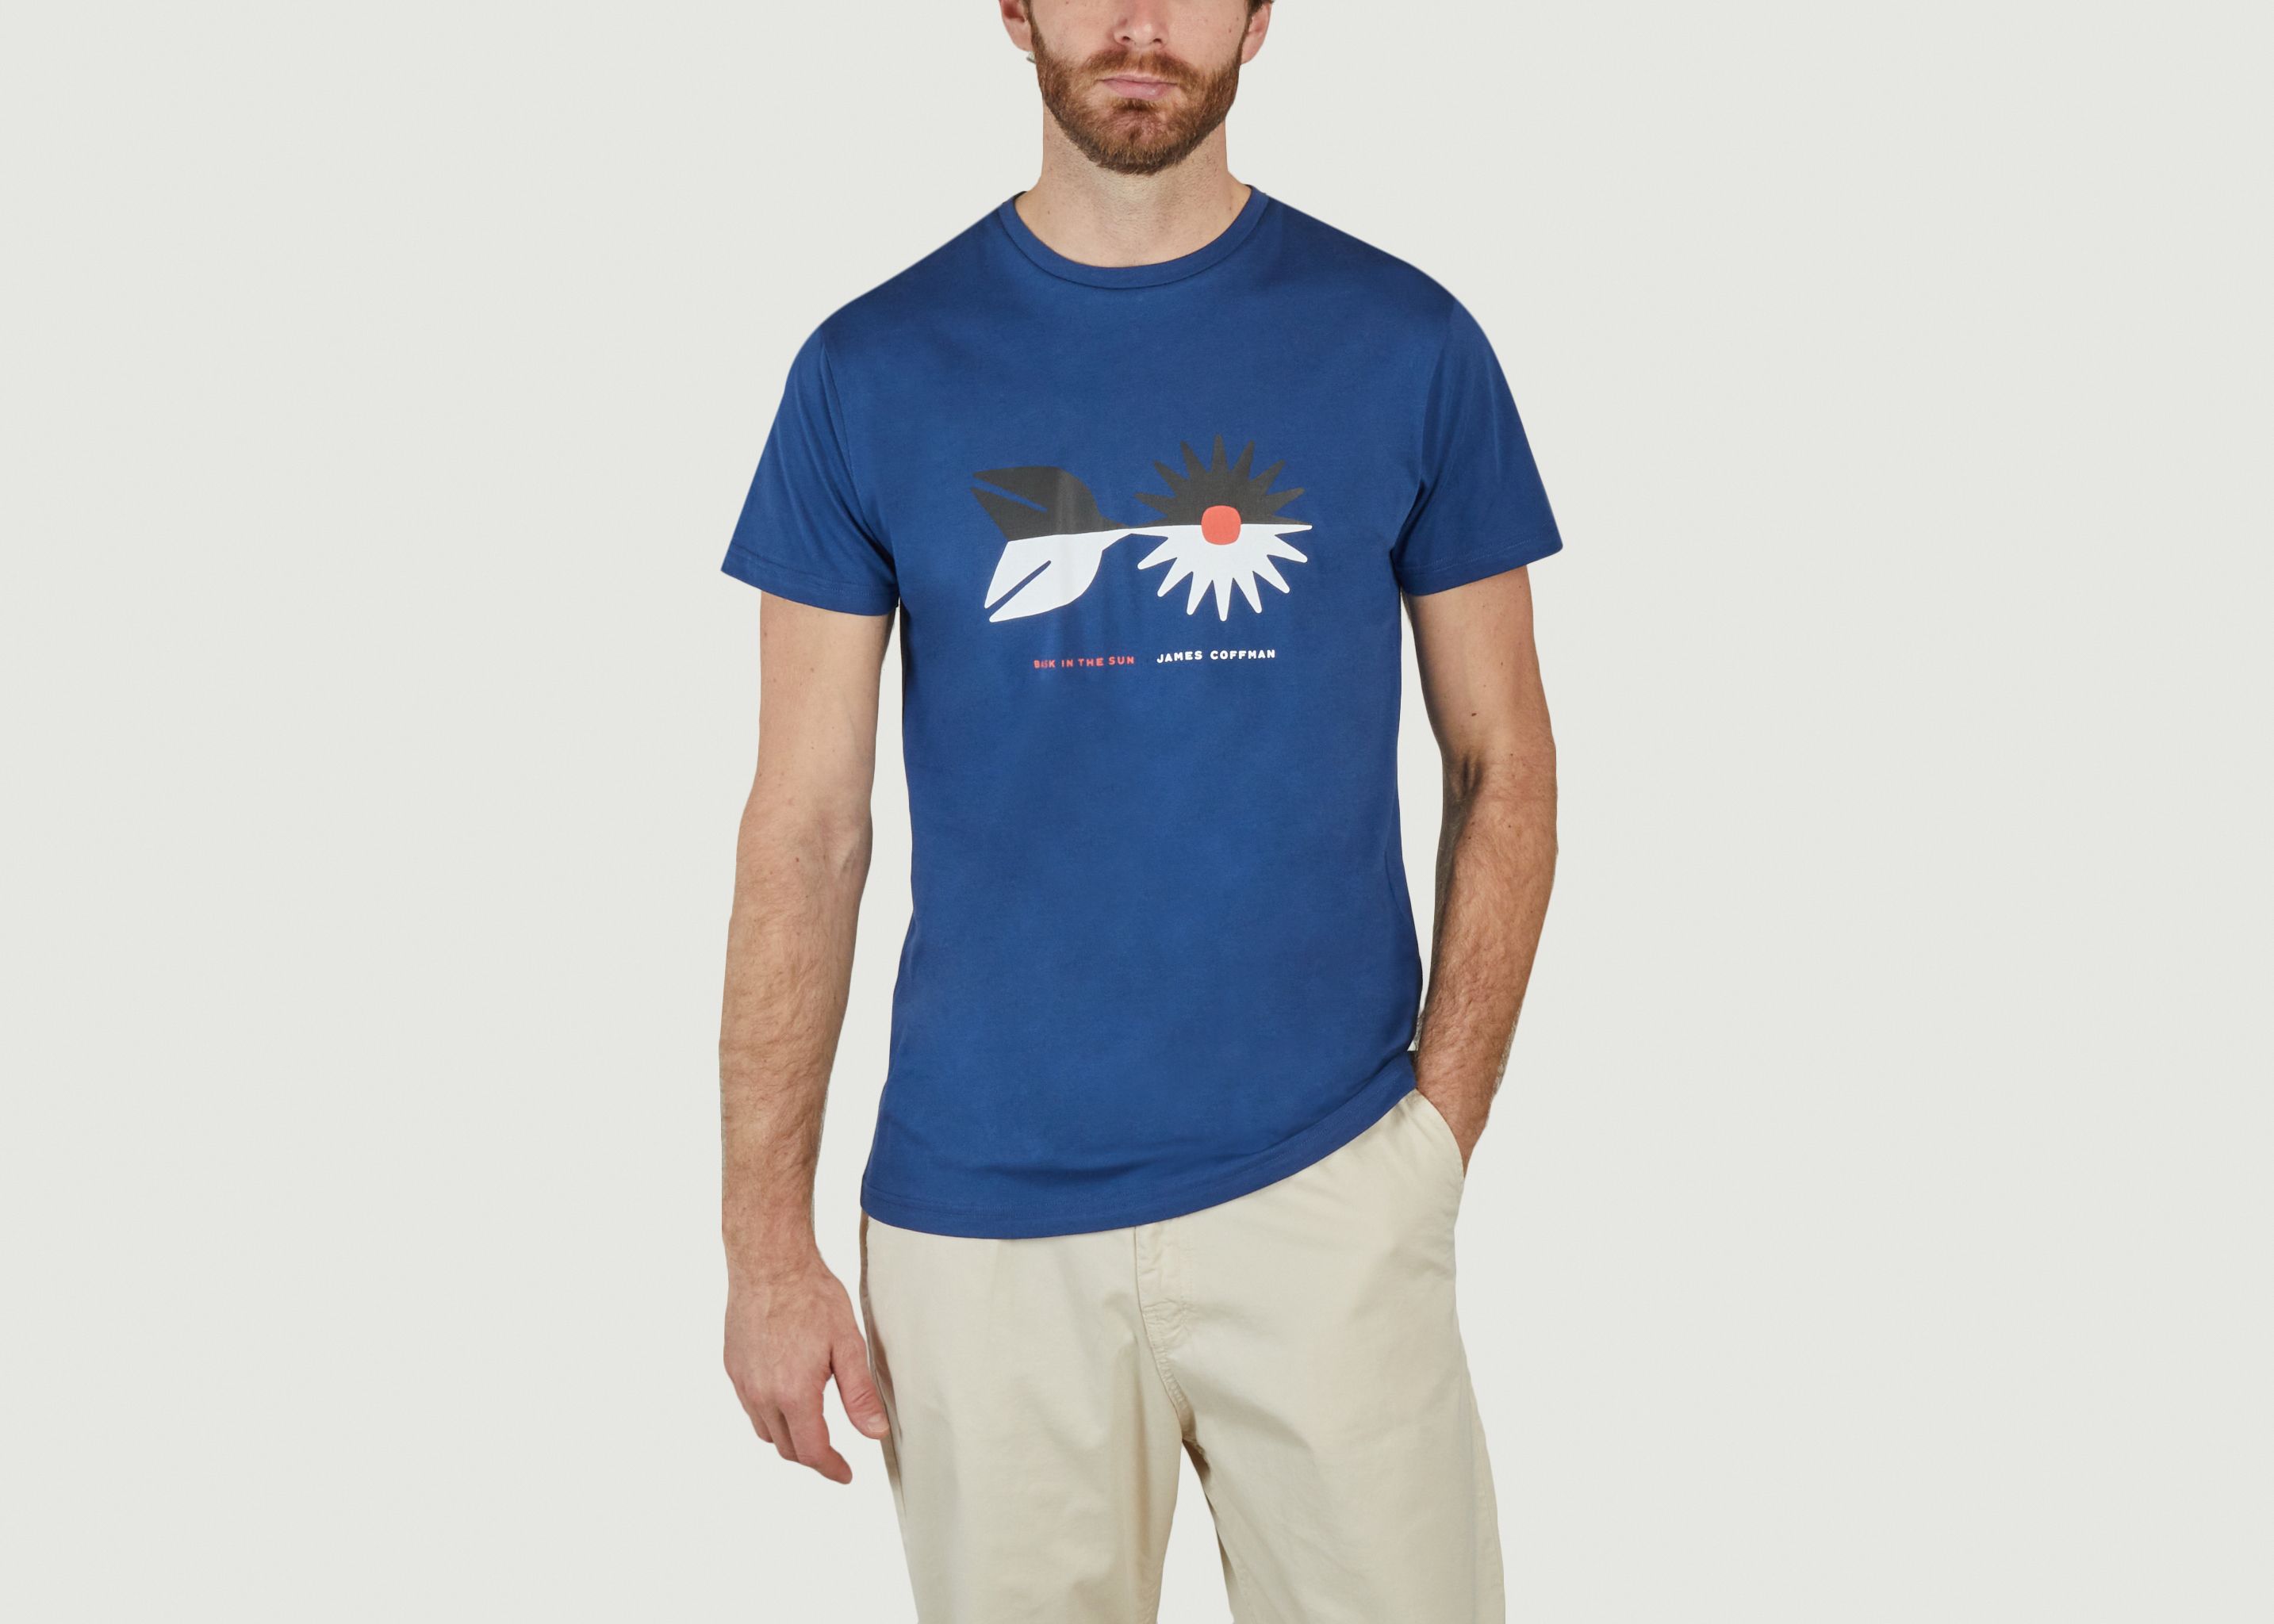 T-shirt Chasing Sun Sweat - Bask in the Sun